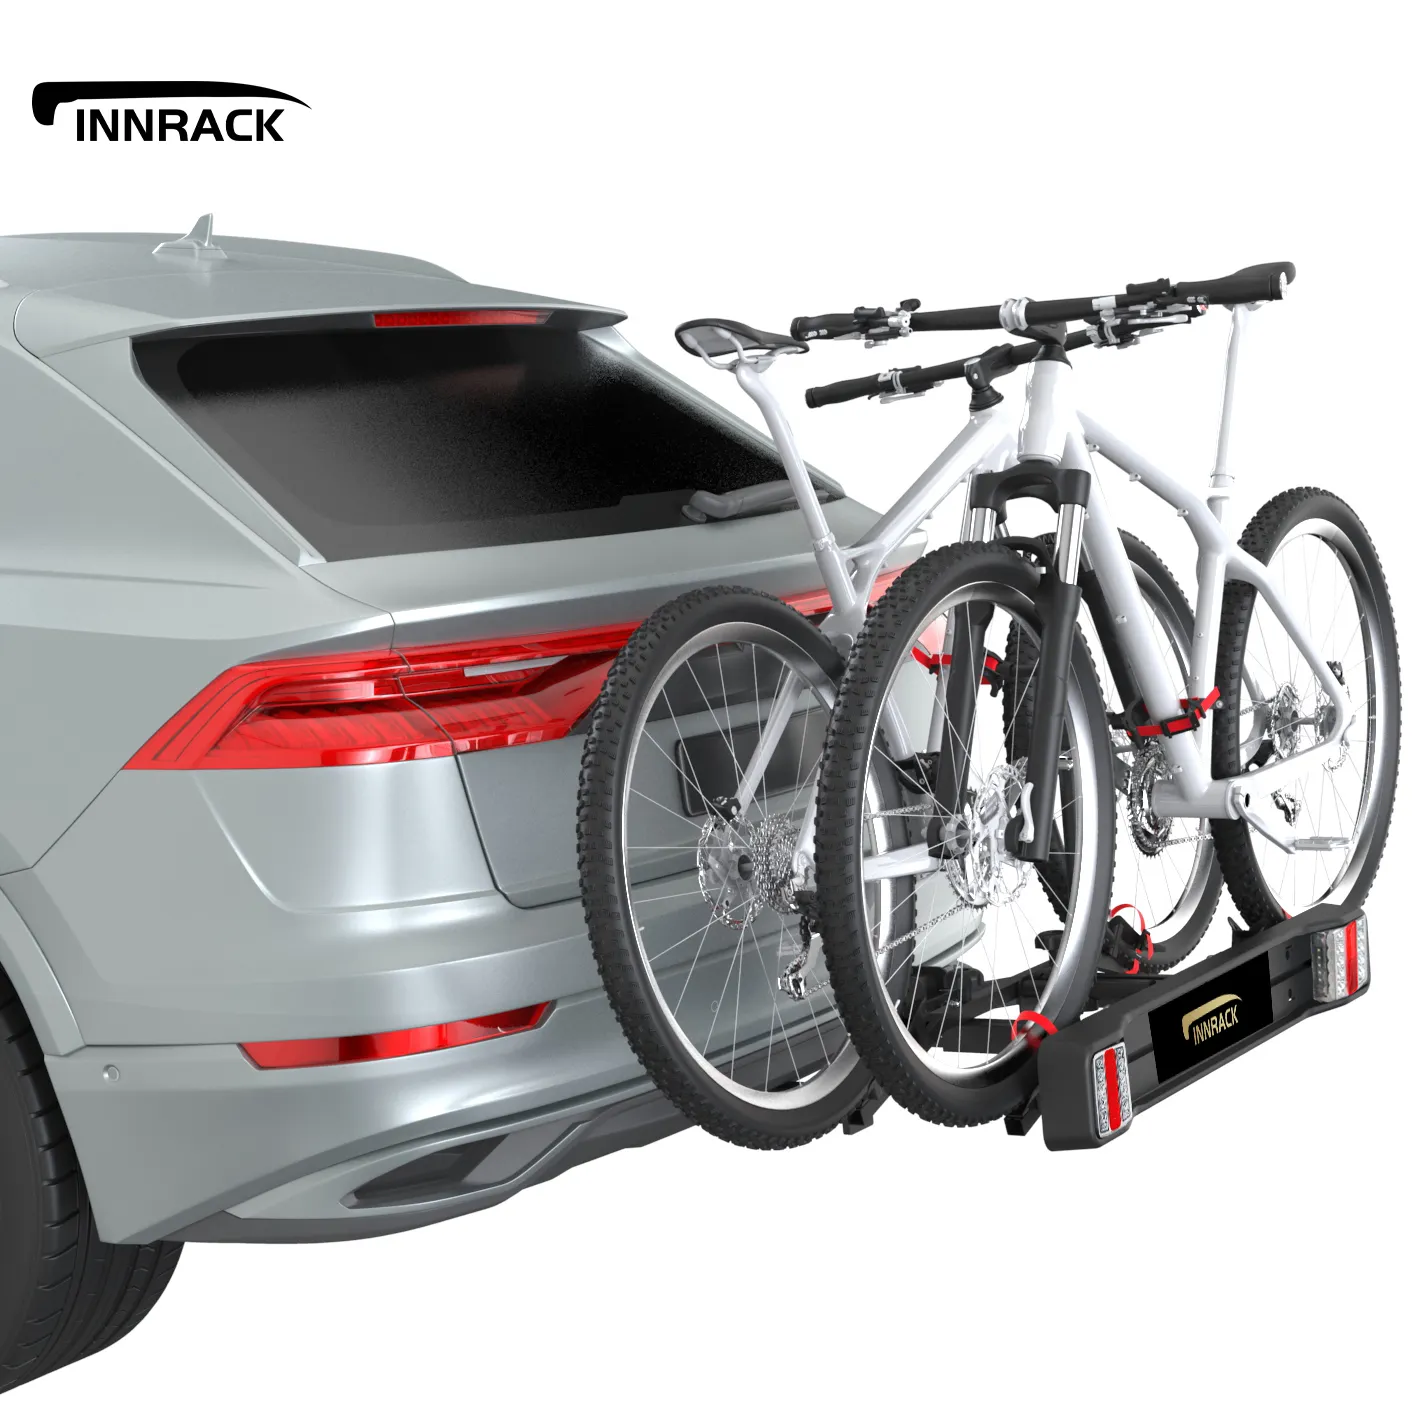 OEM rak sepeda mobil 2 sepeda derek bola sepeda pembawa Sedan perjalanan luar ruangan tabung besi pasang bagasi rak sepeda